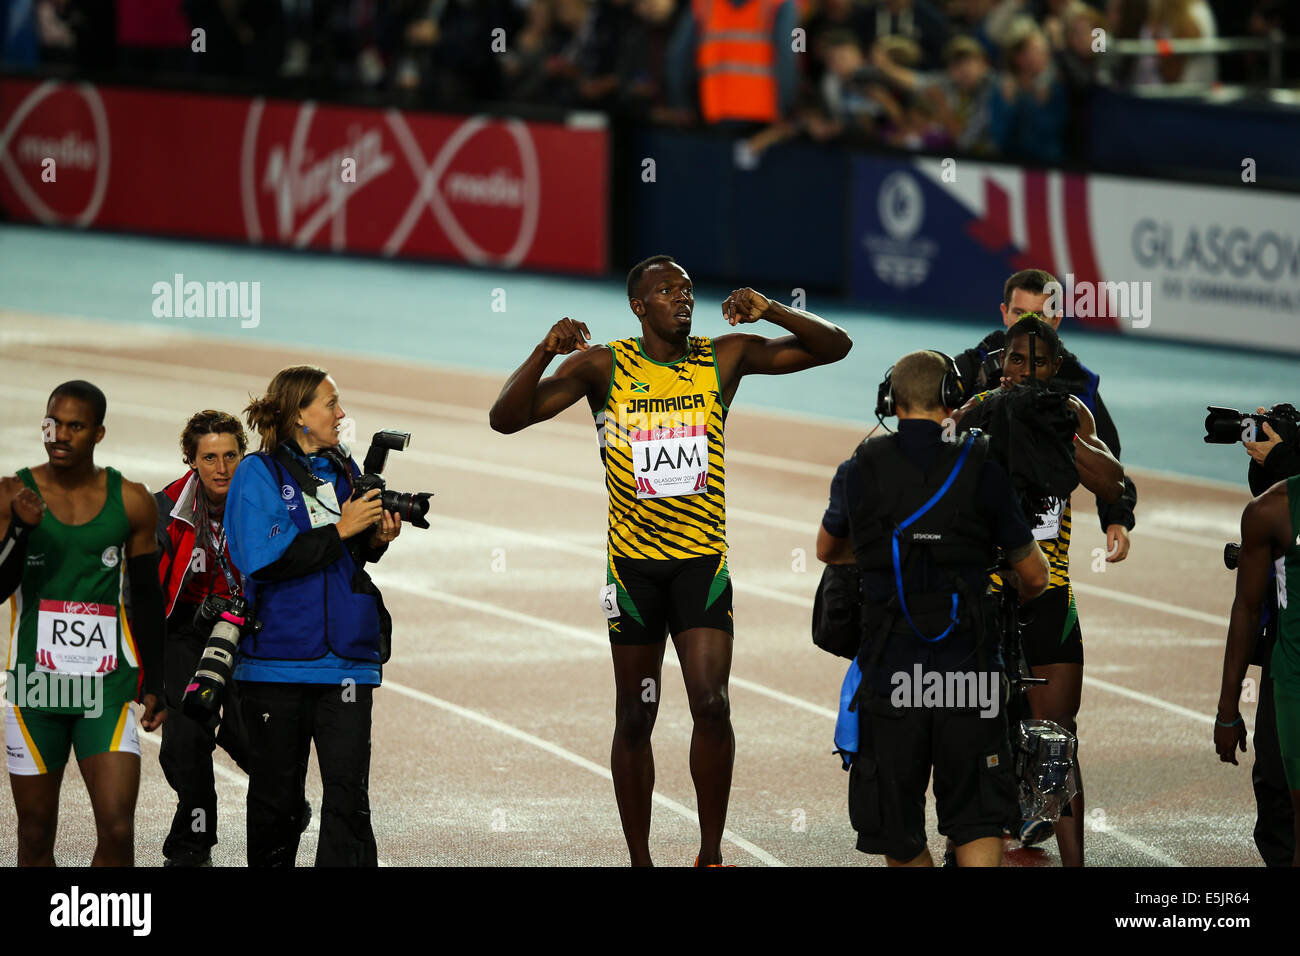 Hampden Park, Glasgow 2. August 2014. Commonwealth Games Männer 4 x 100 endgültig.  Usain Bolt bringt nach Hause den Staffelstab für Jamaika in neuer Rekordzeit Spiele von 37.58.  England wurde Zweiter in 38.02. Jamaikanische Team - Jason Livermore; Kemar Bailey-Cole; Nickel Ashmeade und Usain Bolt. Stockfoto